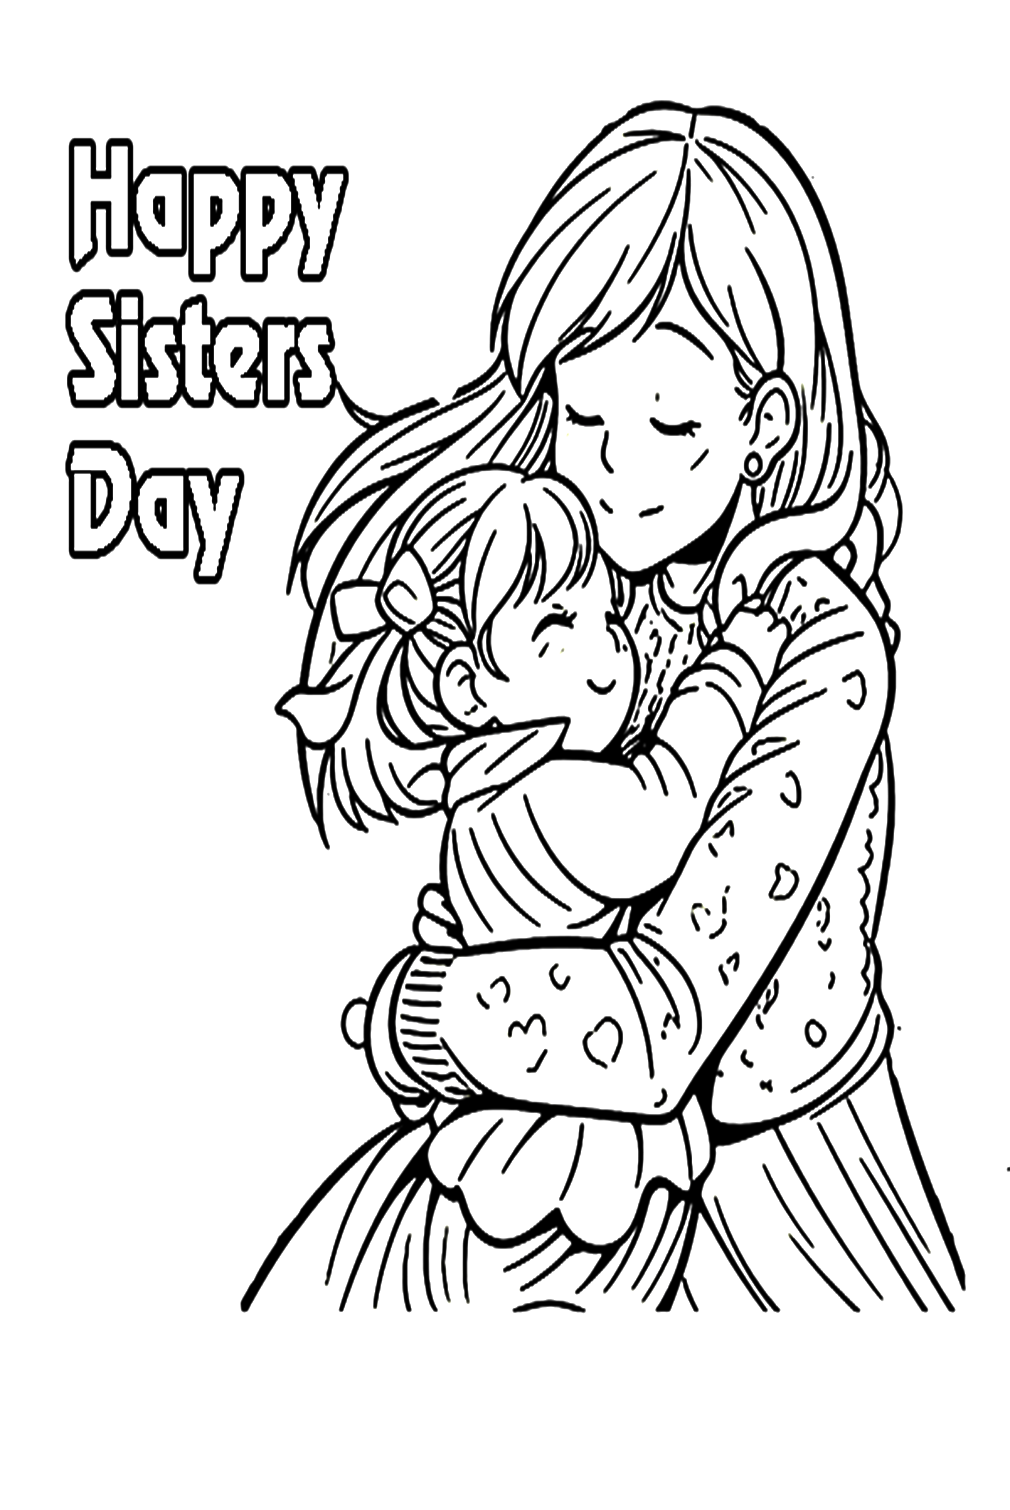 صفحة تلوين يوم الأخوات السعيدة من يوم الأخوات